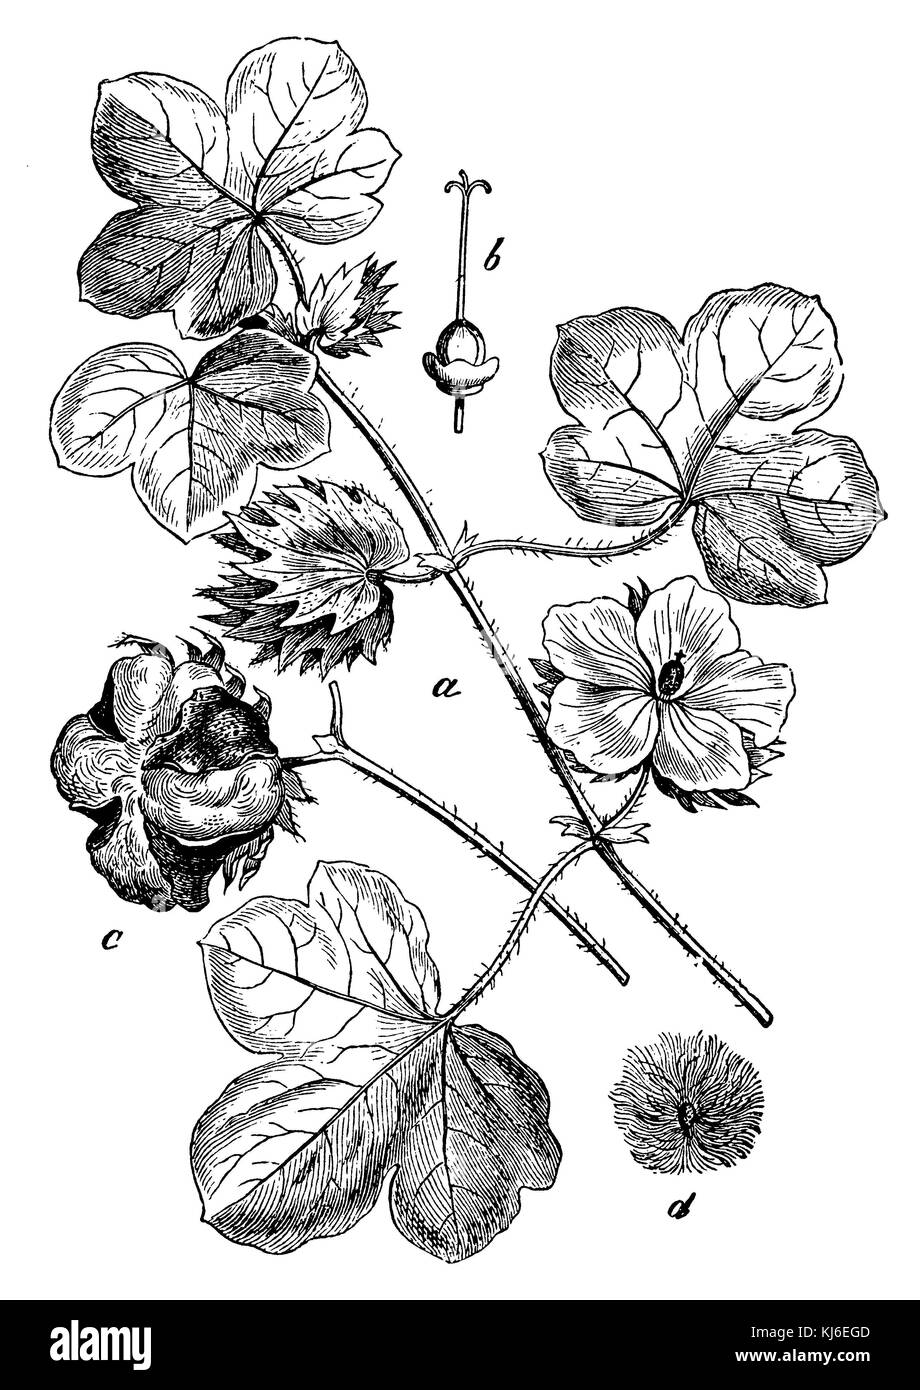 Il cotone (baumwolle <gossypium herbaceum> un blütenzweig, b stempel mit dem fruchtknoten, c aufgesprungene kapselfrucht, d stesso mit haaren) Foto Stock